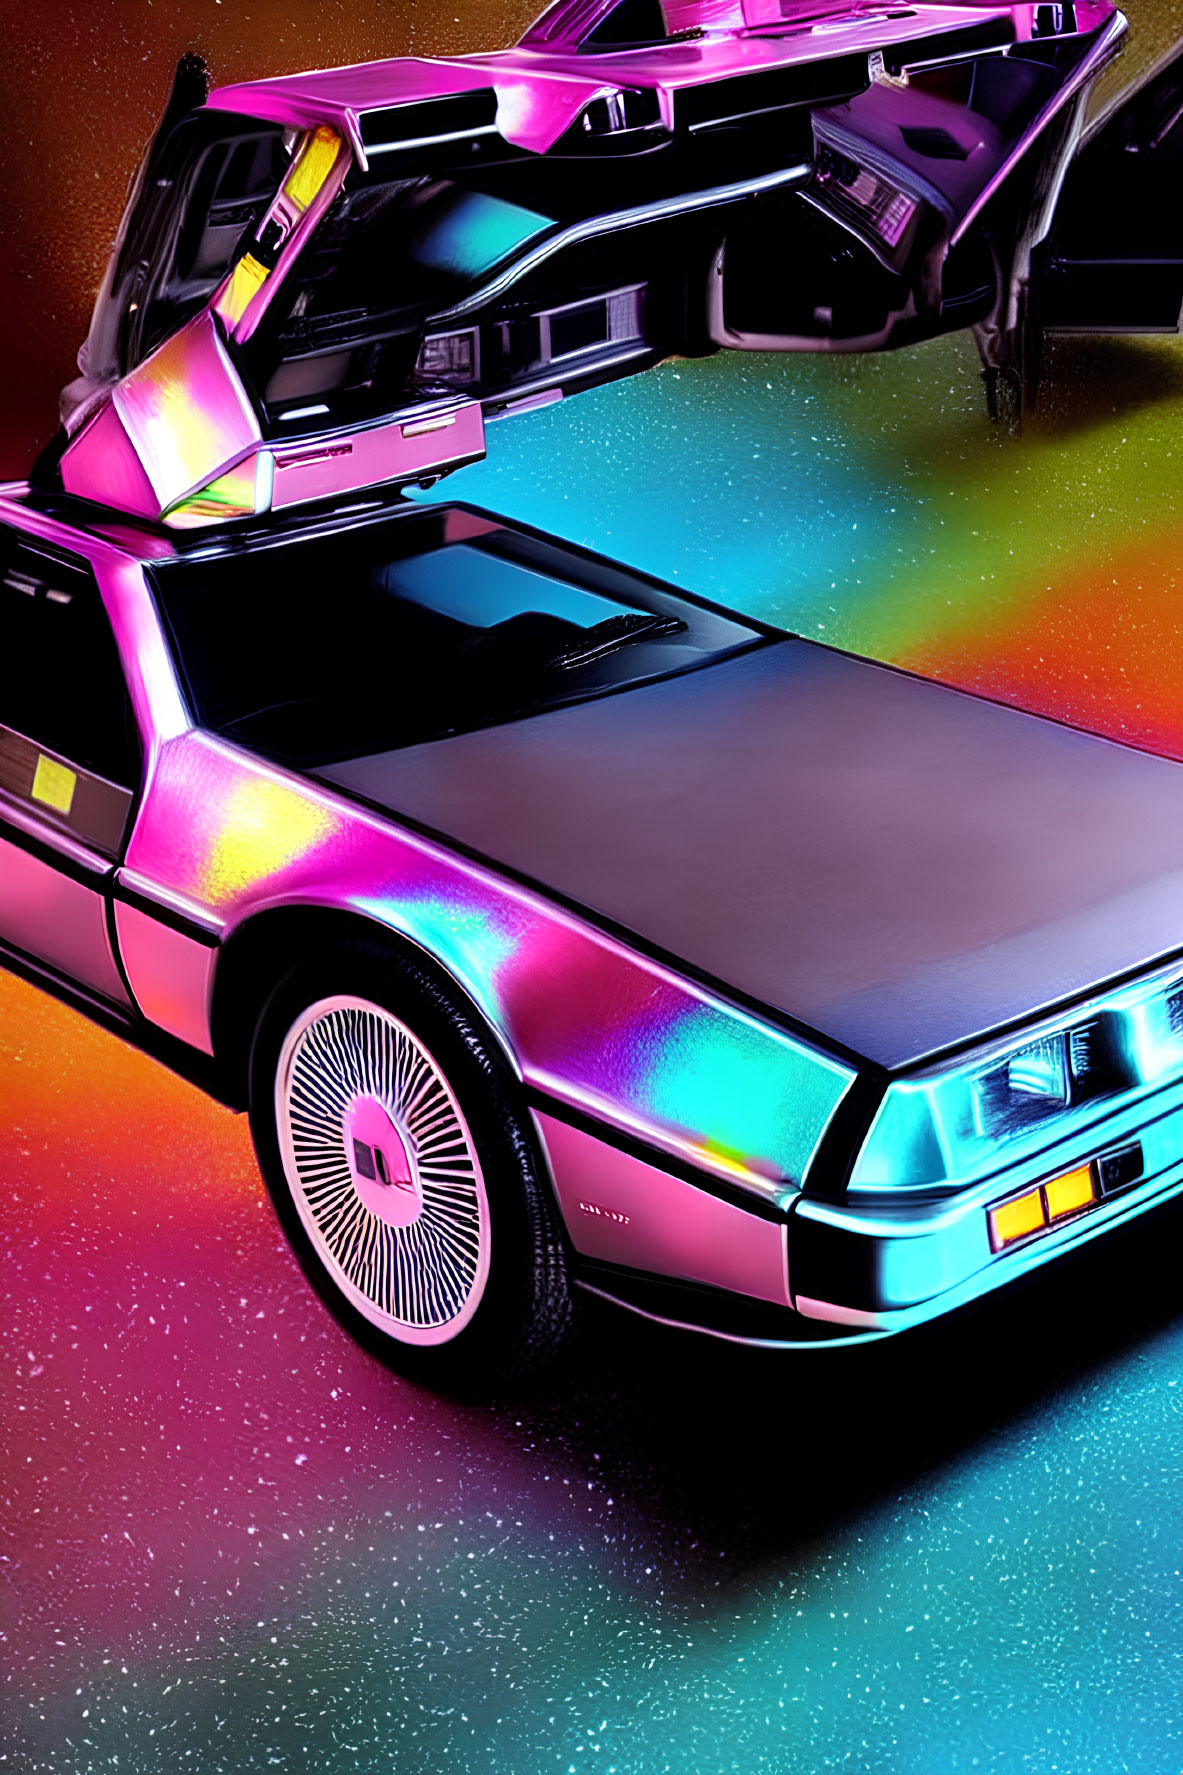 Neon-colored DeLorean car with gull-wing doors on retro-futuristic backdrop